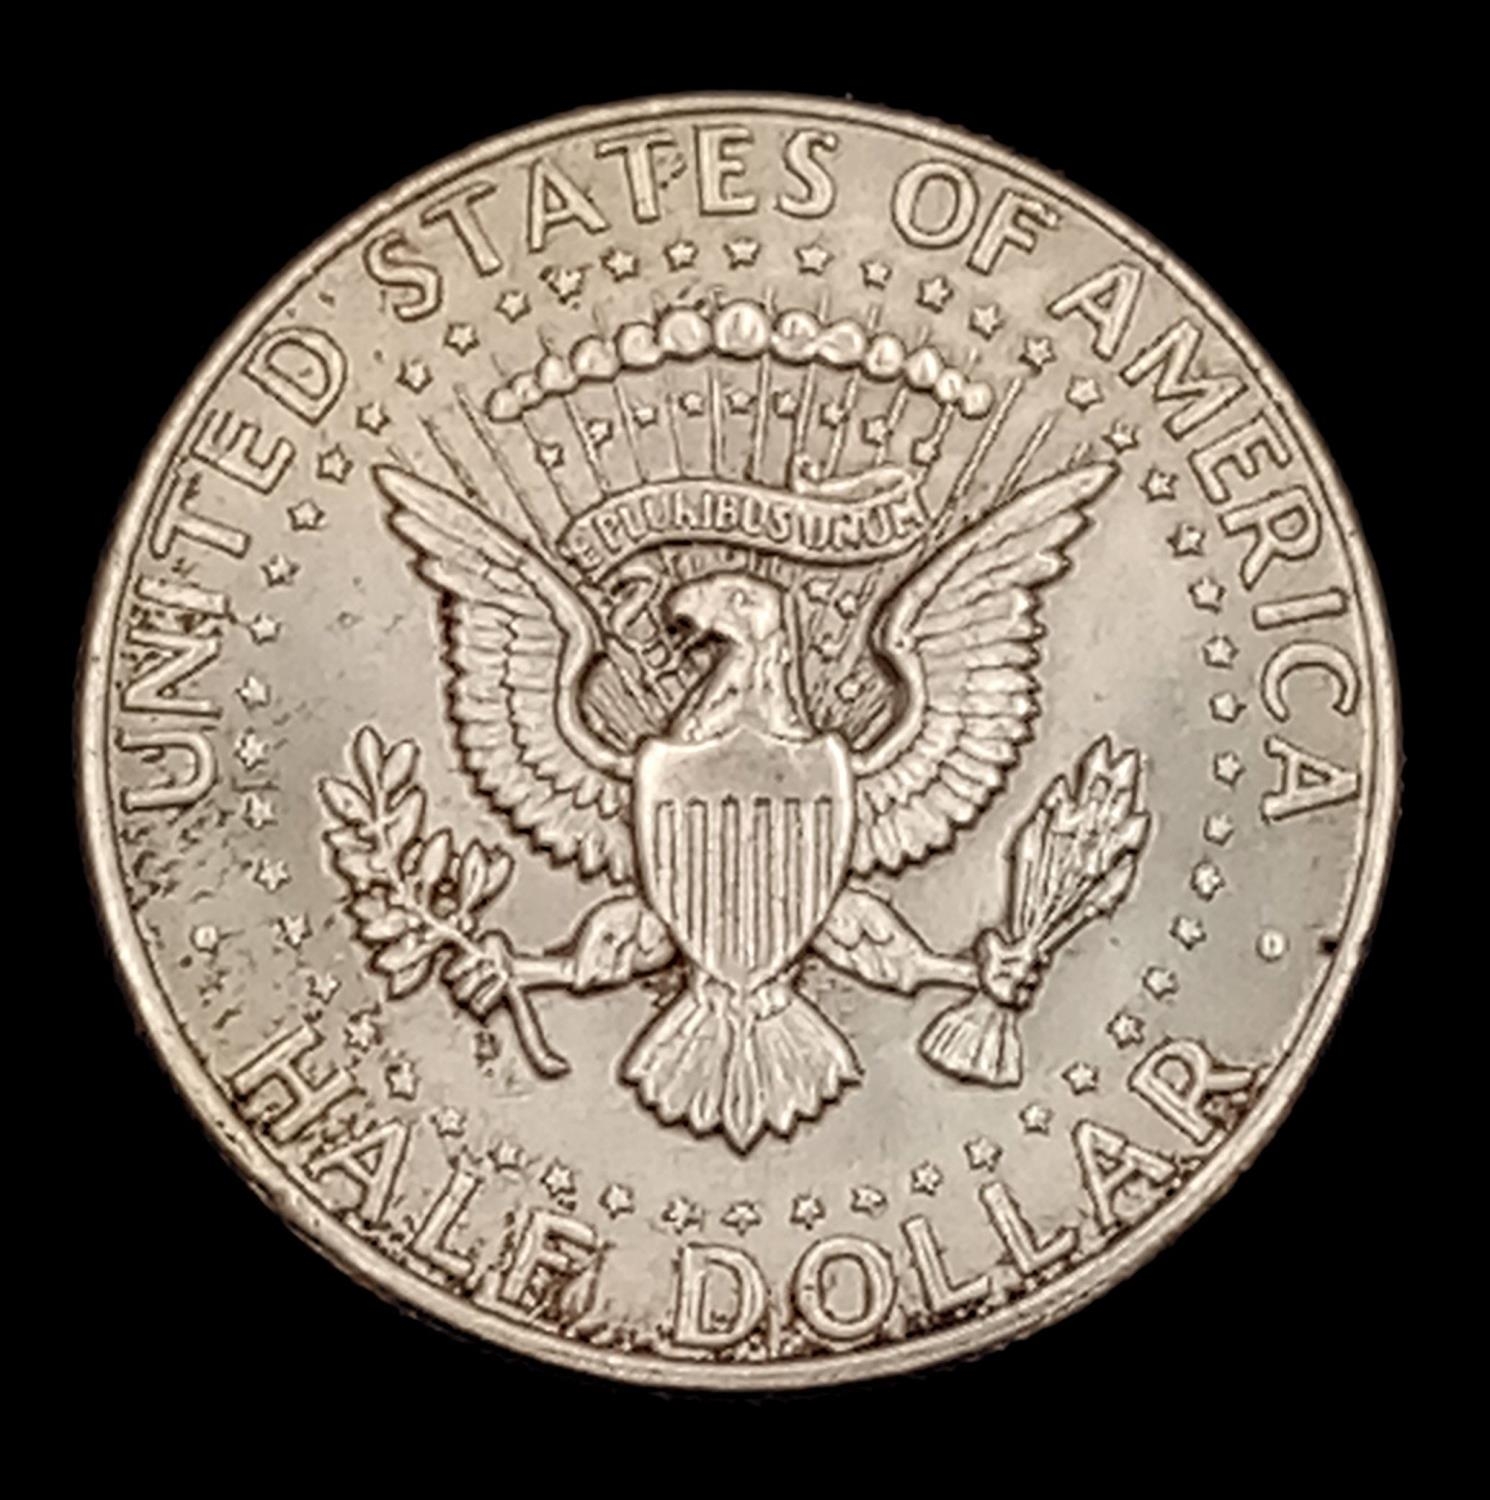 A 1964 Kennedy Half Silver Dollar. Good definition. - Image 2 of 2